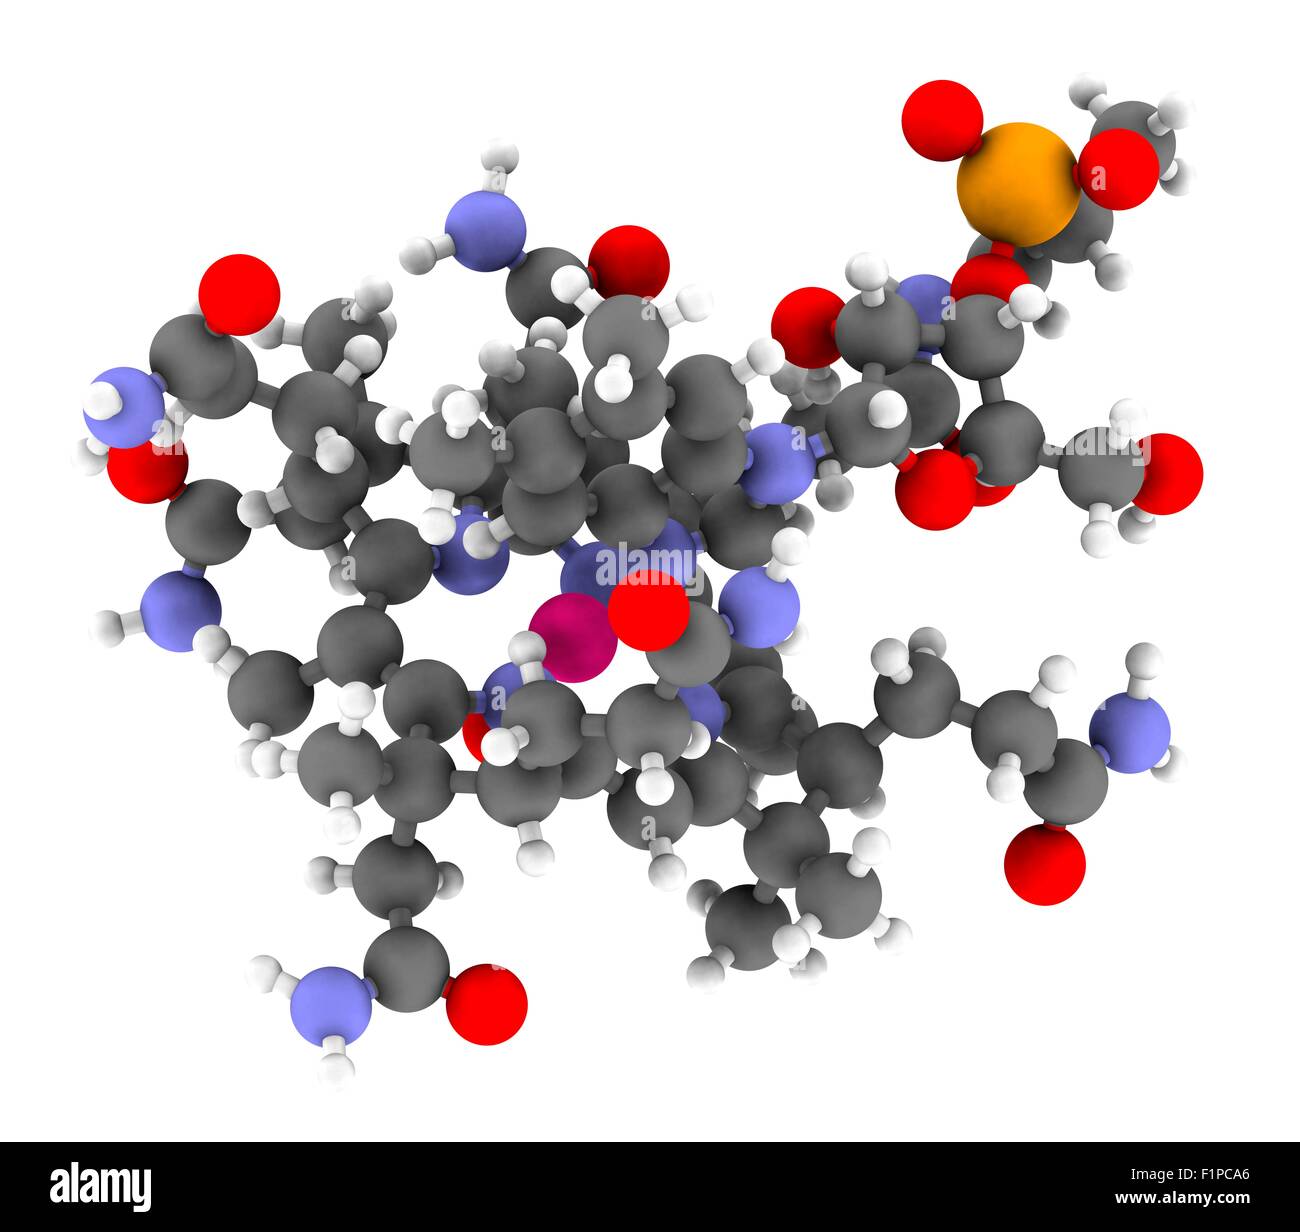 L'hydroxocobalamine molécule de vitamine B12 souvent donné dans un but thérapeutique en cas de carence en B12, mais aussi pour traiter l'empoisonnement au cyanure Banque D'Images